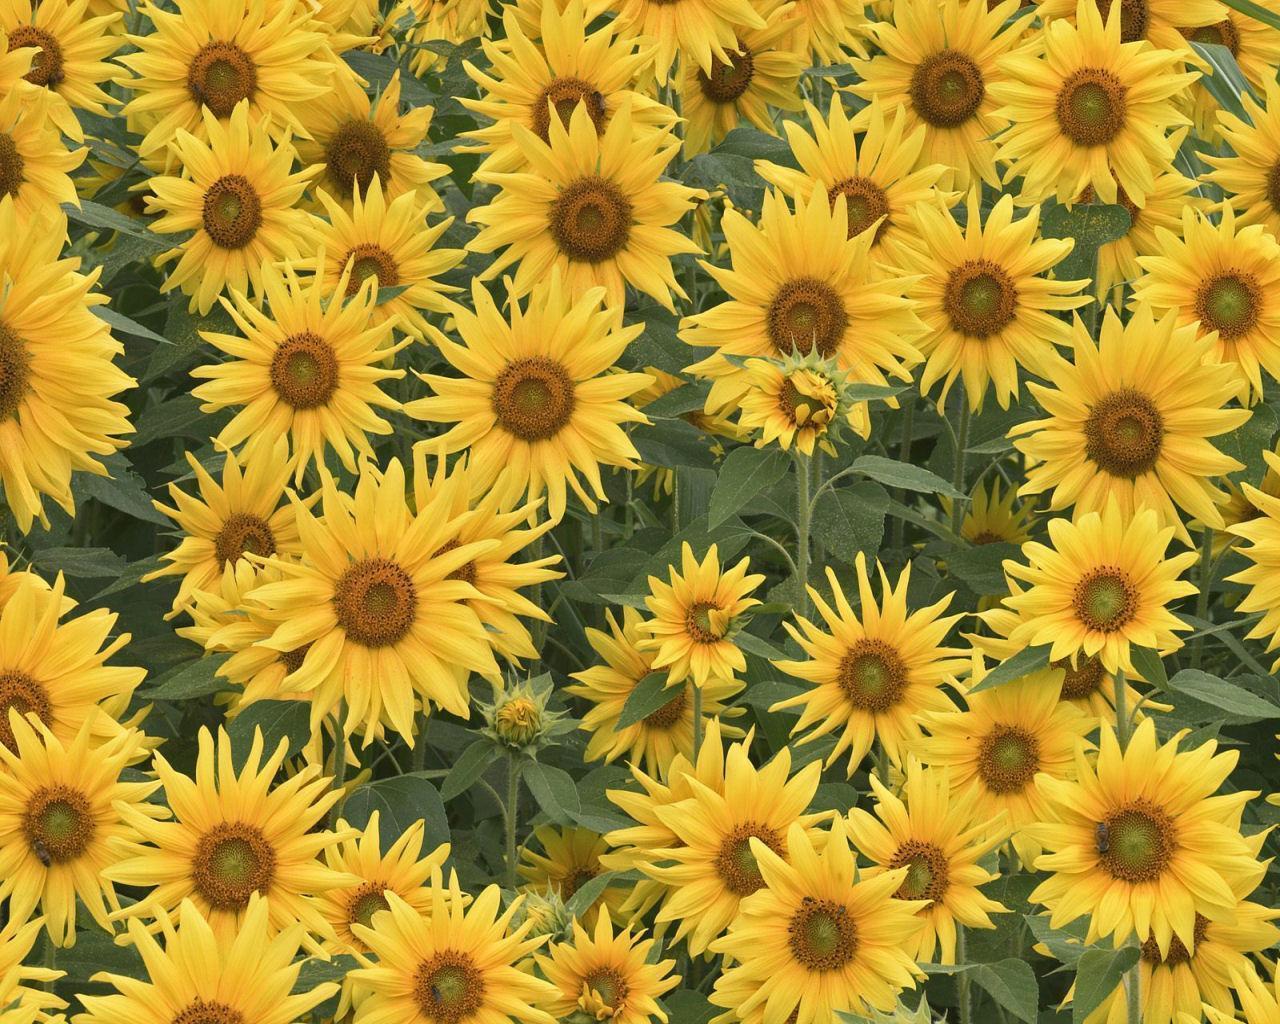 Sunflower Tumblr Backgrounds.